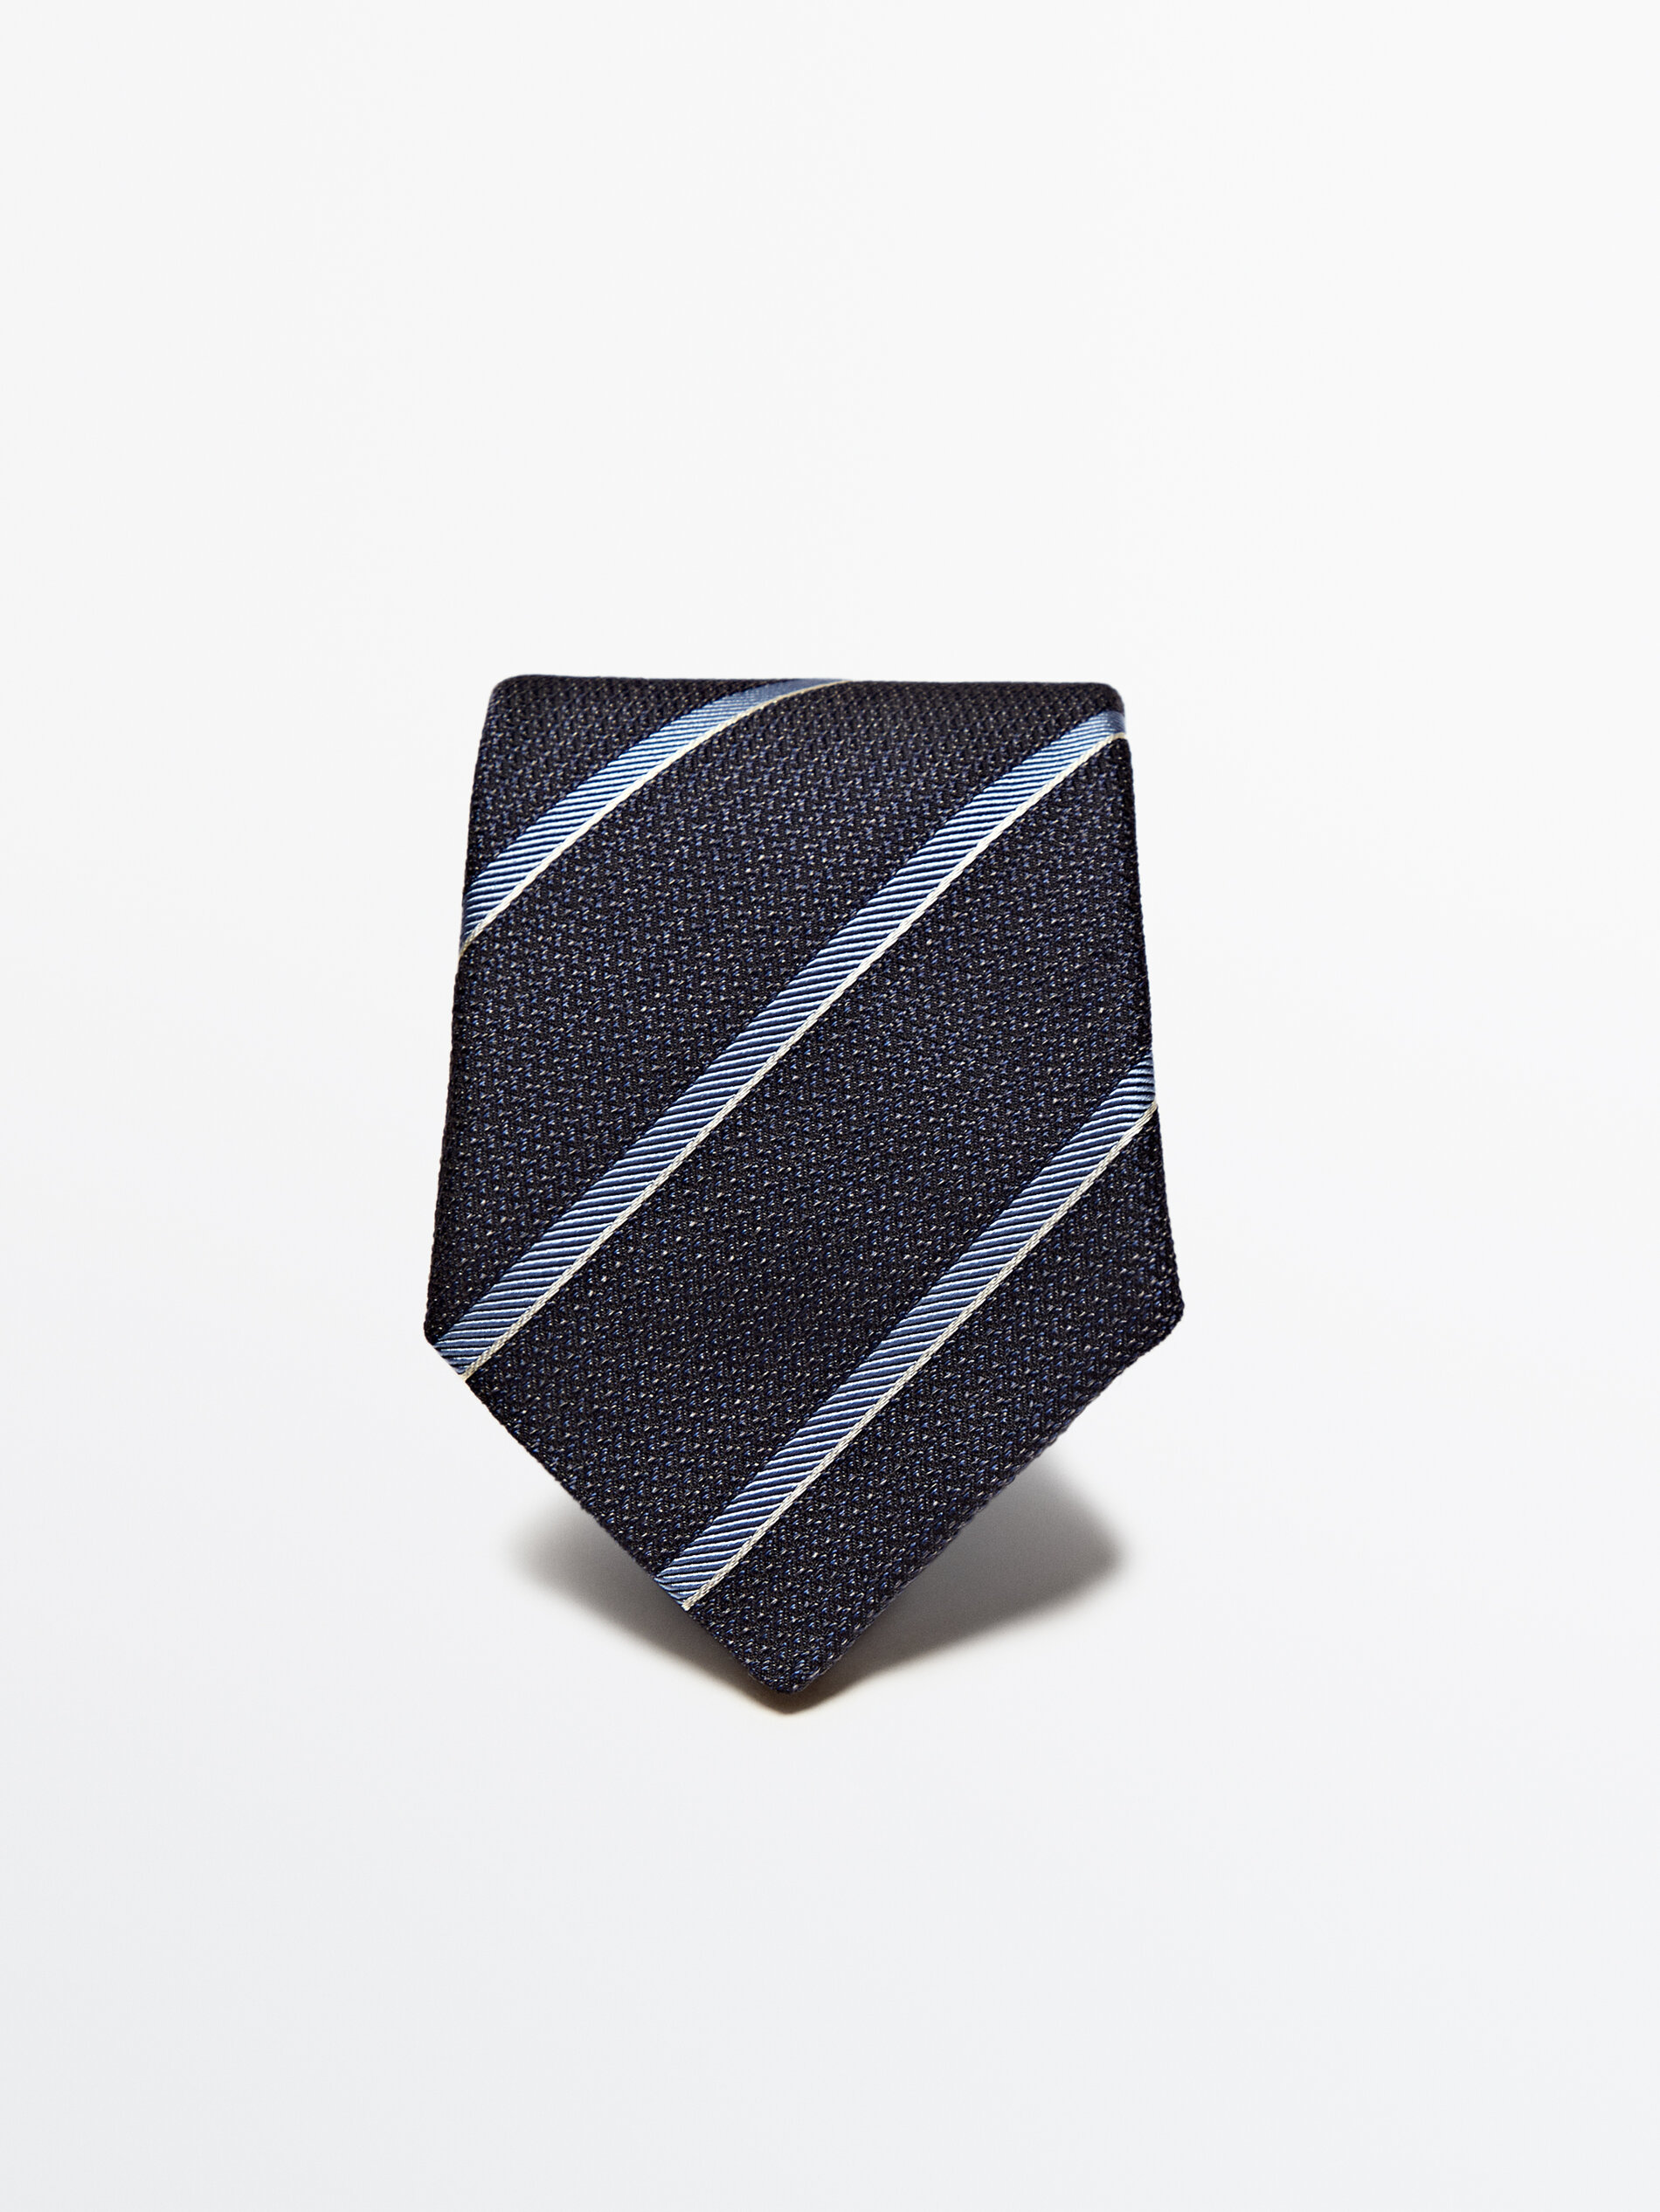 Corbata rayas con algodón y seda